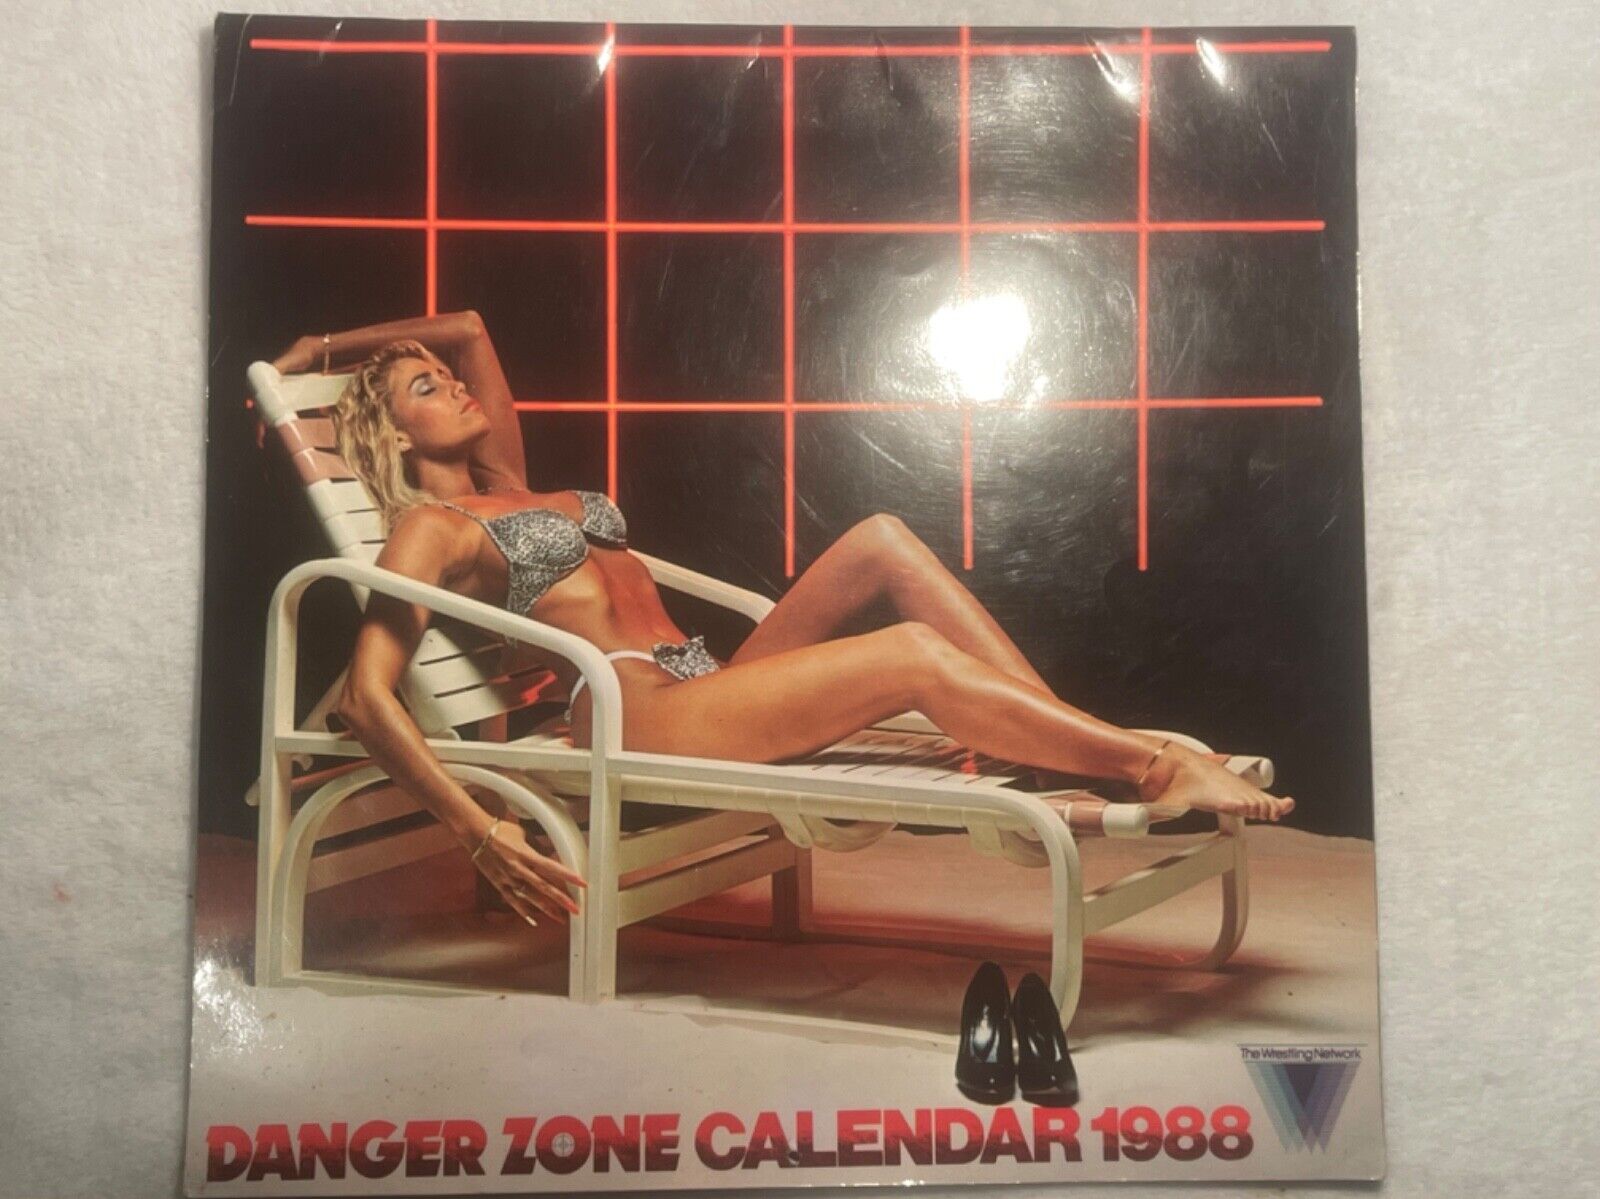 Danger Zone 1988 Wrestling Calendar Swimsuit 1987 Wrestling Network Vintage Rare